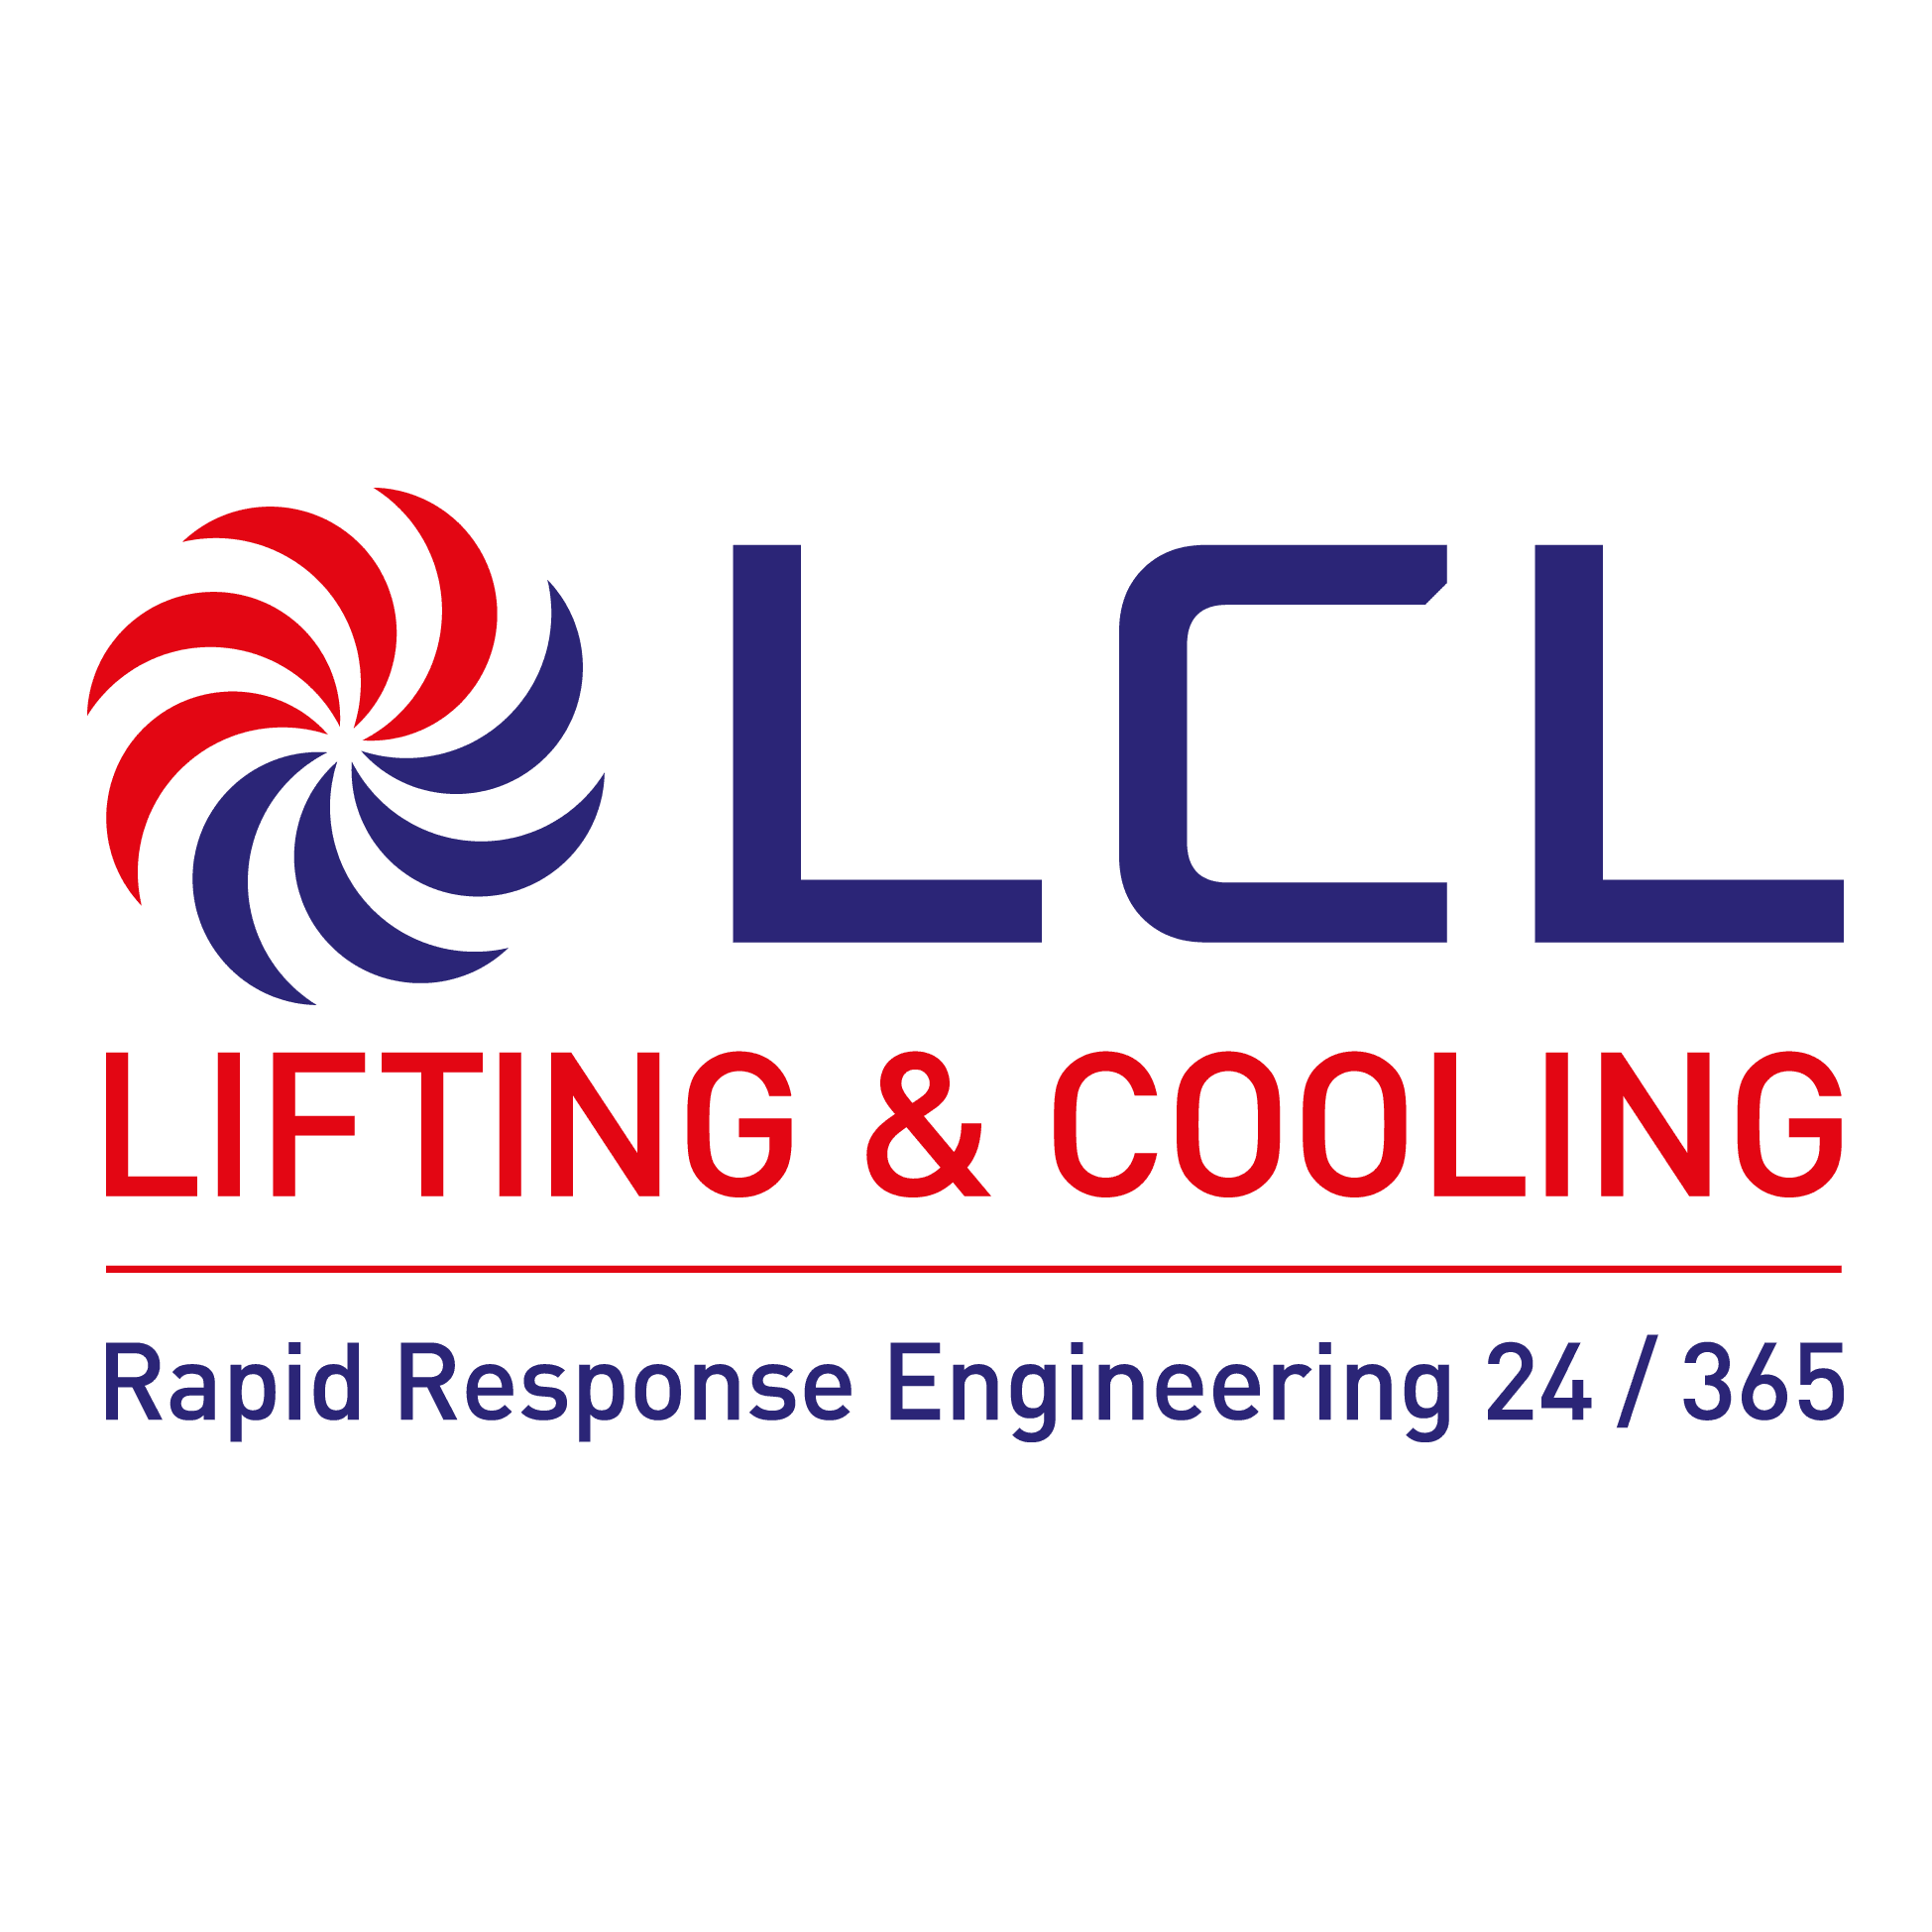 Lifting & Cooling Ltd Logo